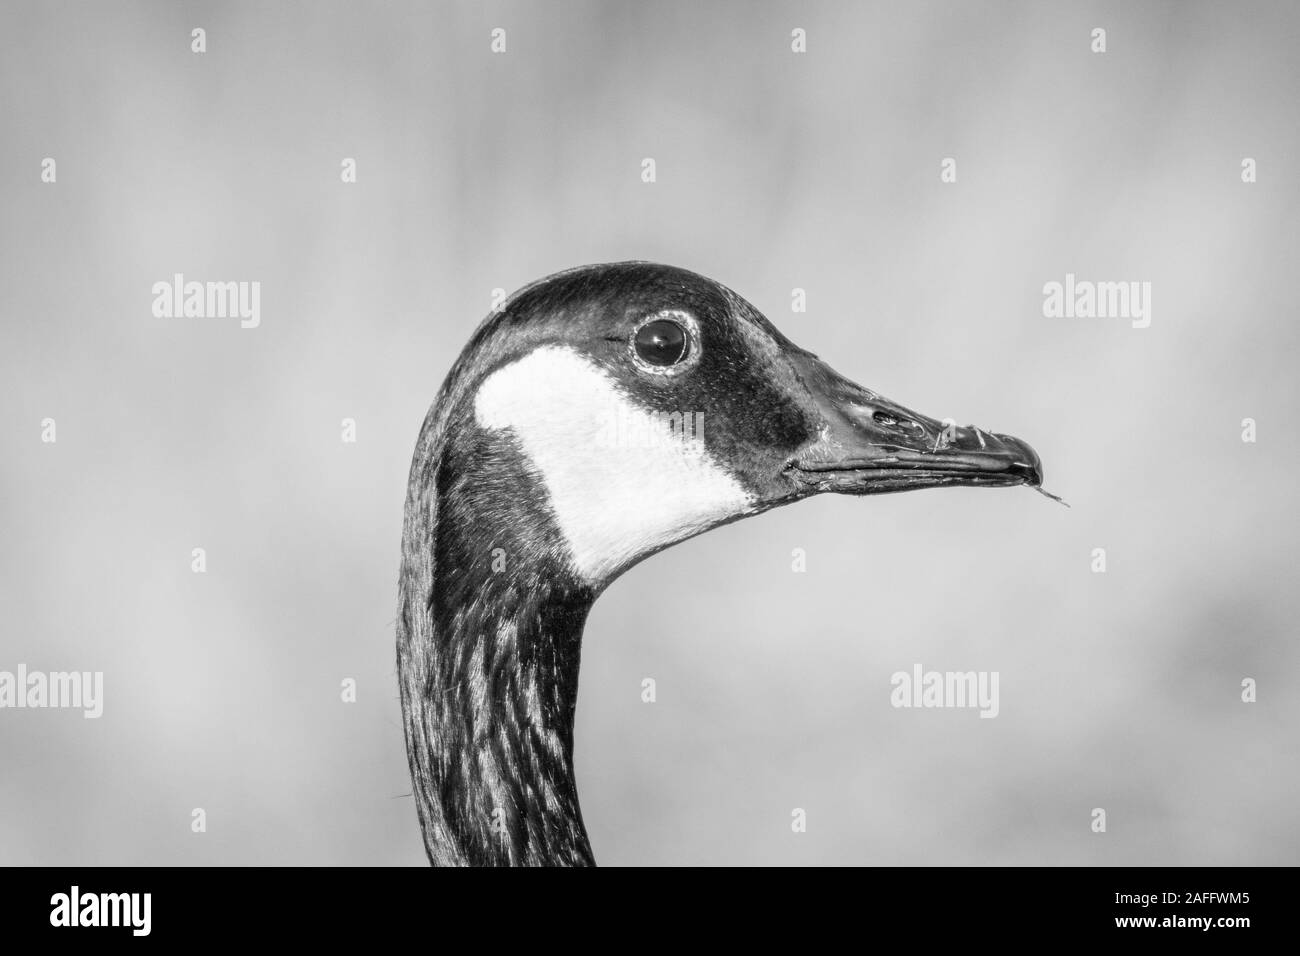 Canada Goose (Branta canadensis) della testa e del collo di profilo sulla giornata autunnale. Mostra distintivo faccia nera con il bianco dal sottogola. Monocromatico. Foto Stock